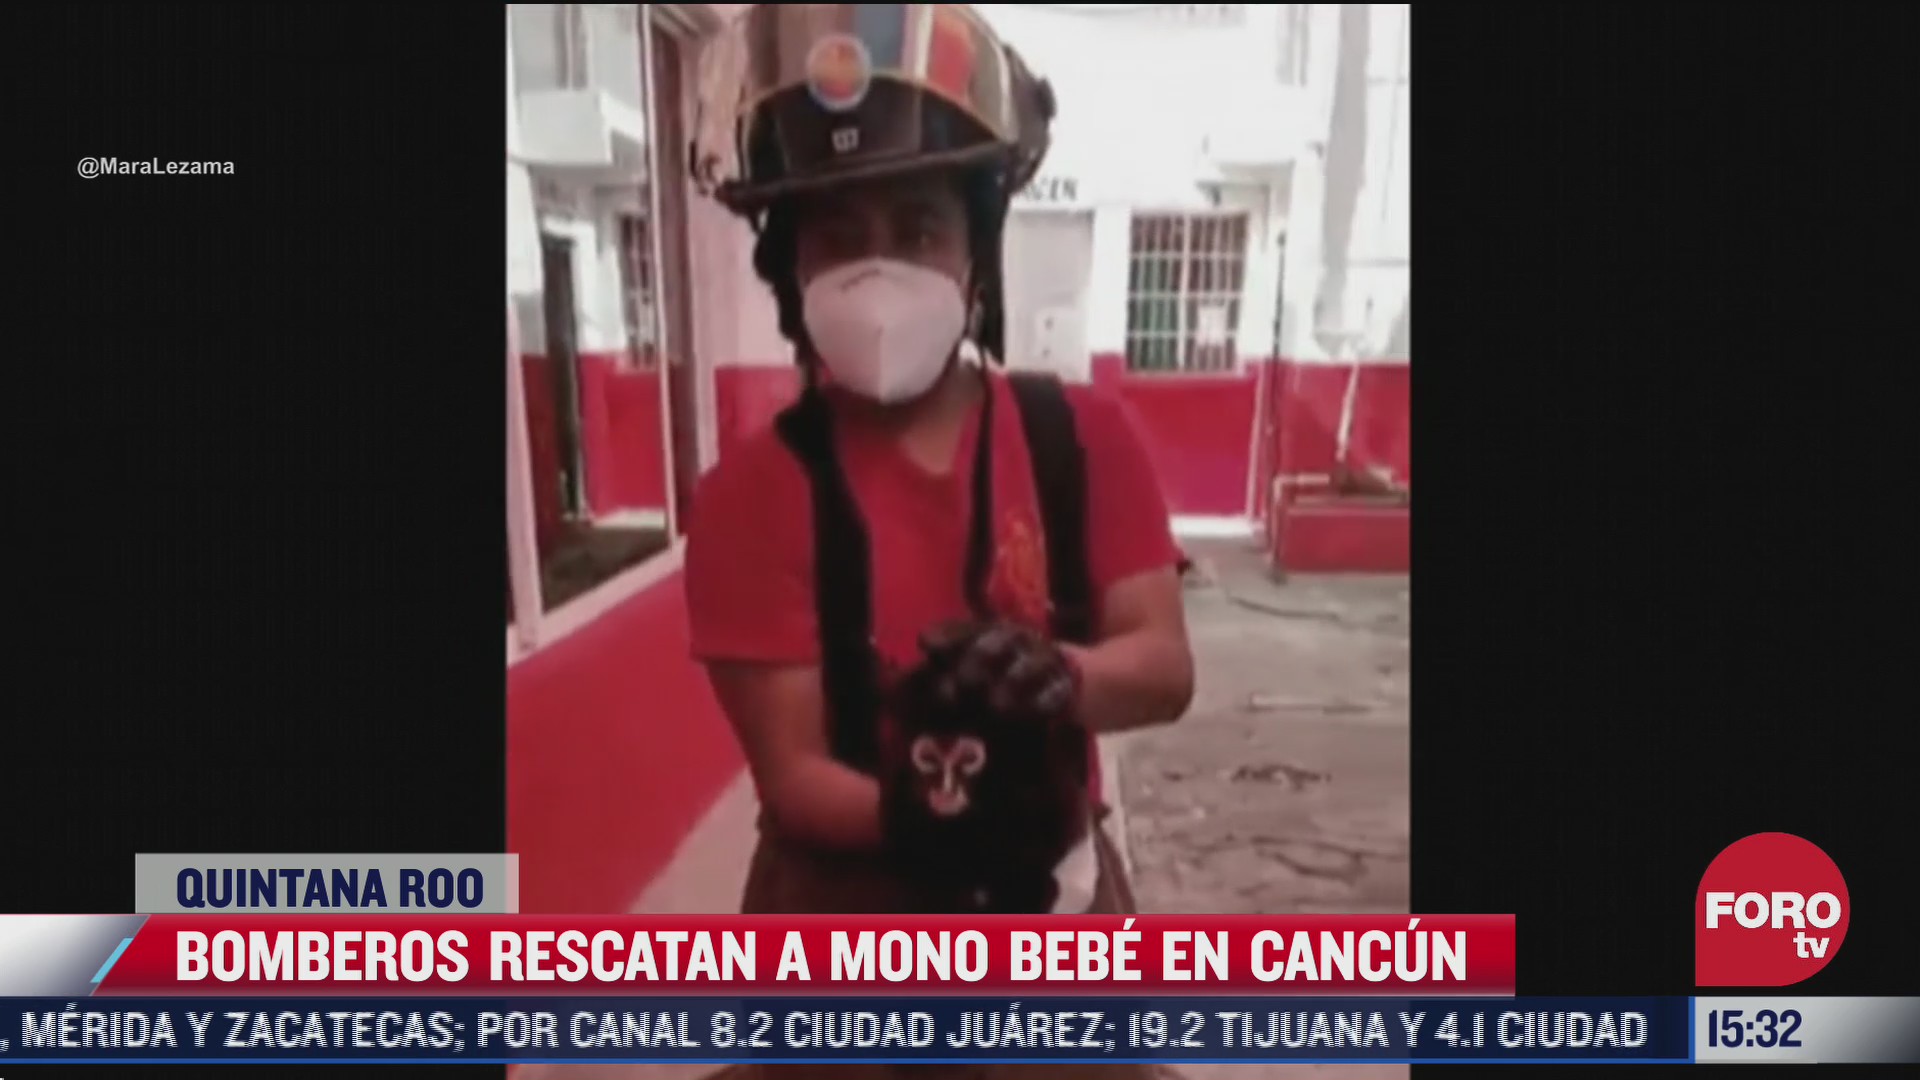 rescatan a mono bebe extraviado en calles de cancun quintana roo